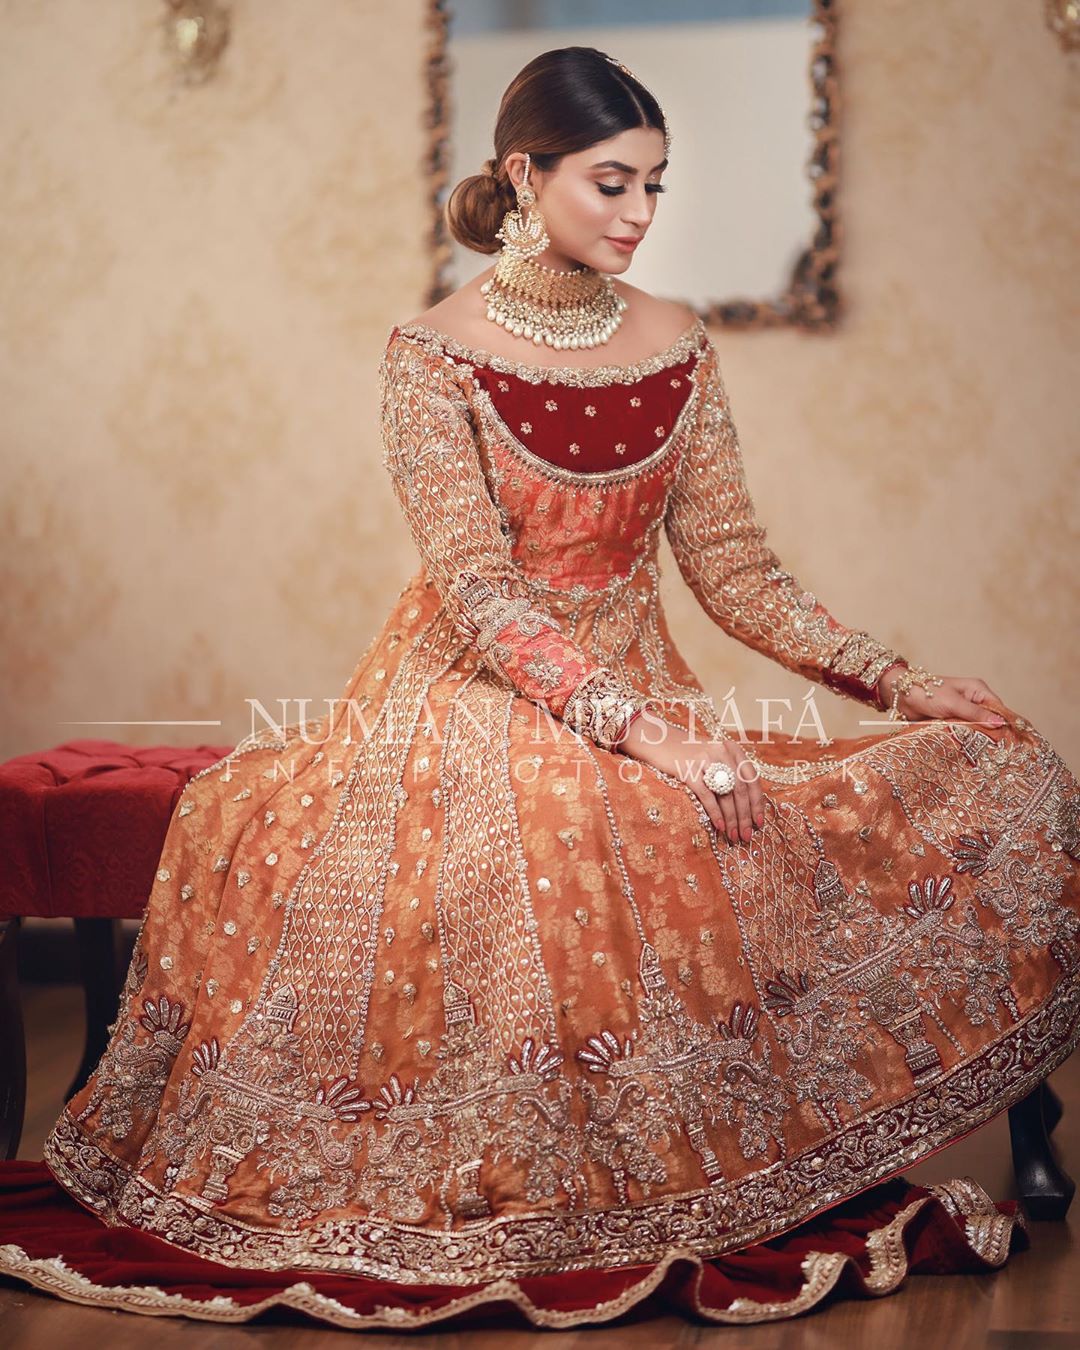 Gorgeous Actress Zoya Nasir Beautiful Bridal Photo Shoot